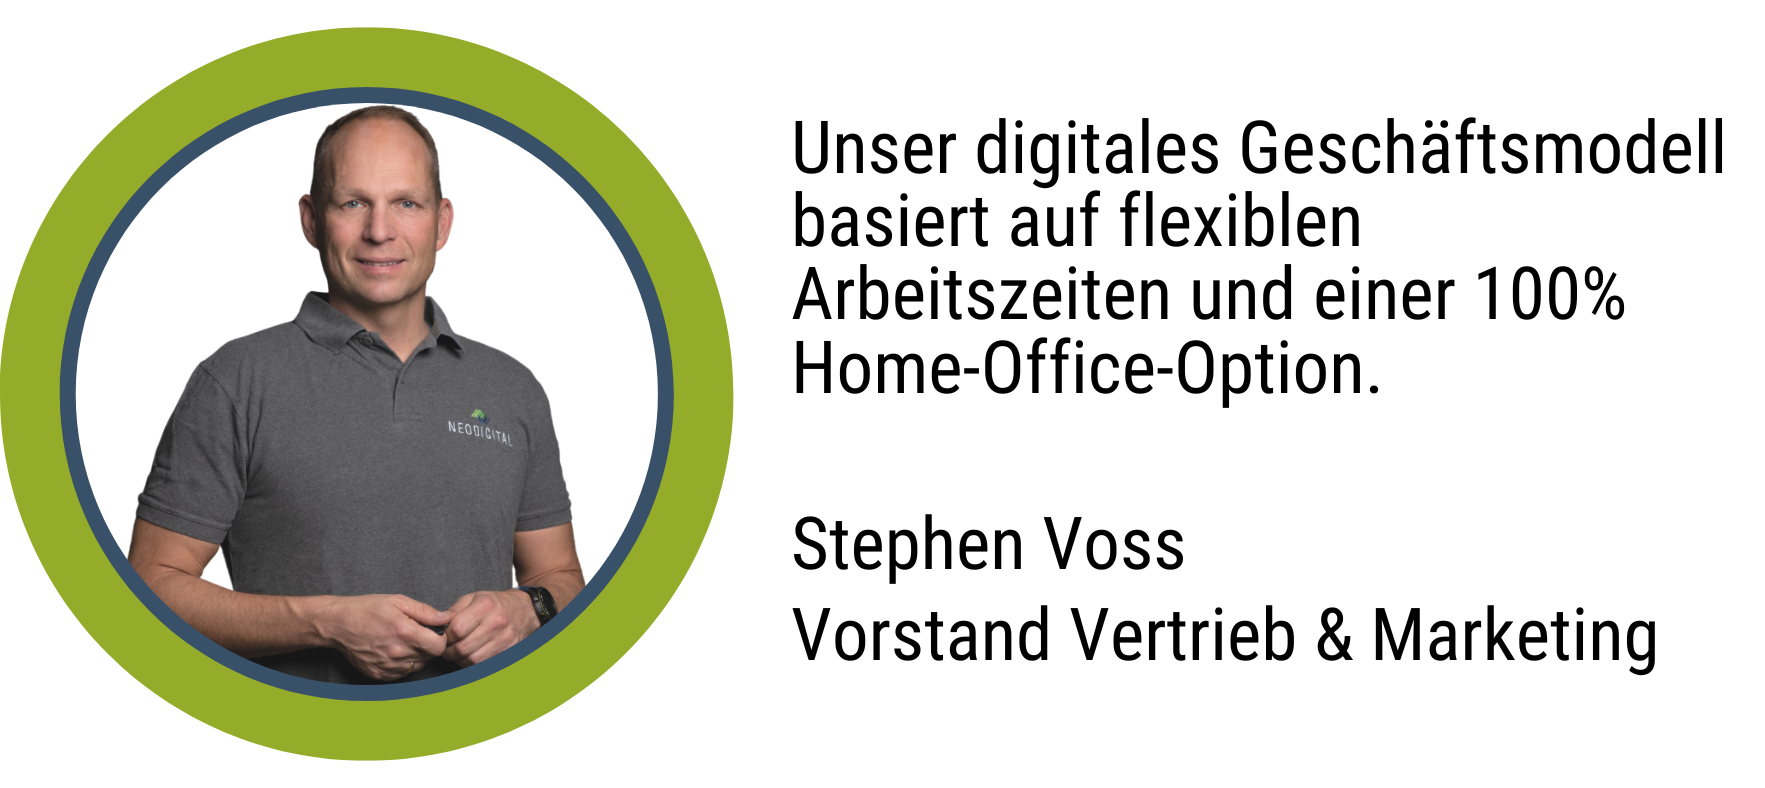 Zitat Stephen Voss, Vorstand Vertrieb & Marketing: Unser digitales Geschäftsmodell basiert auf flexiblen Arbeitszeiten und einer 100 % Home-Office-Option.